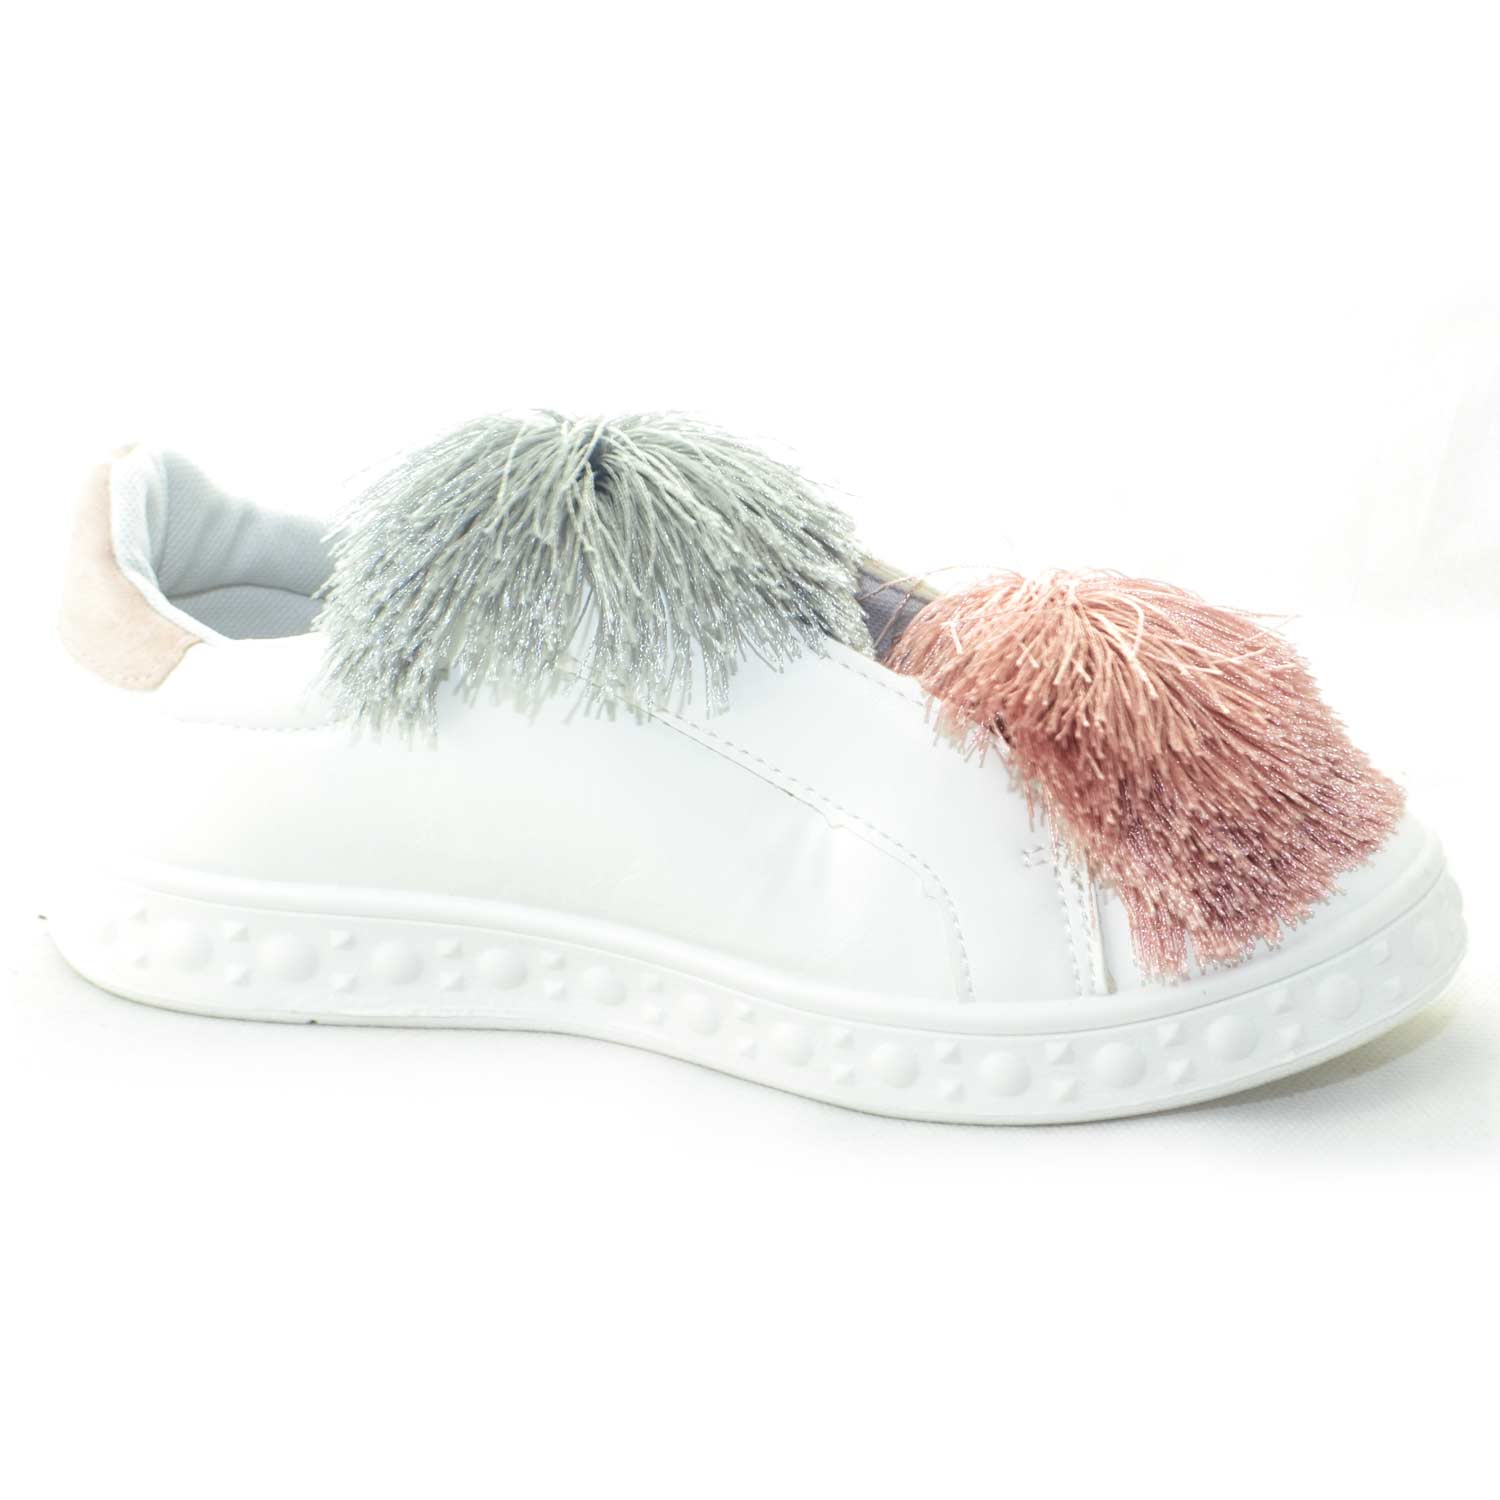 scarpe donna sneakers bassa bianco femminili pelle con applicazioni colorate simil pon pon fondo liscio glamour